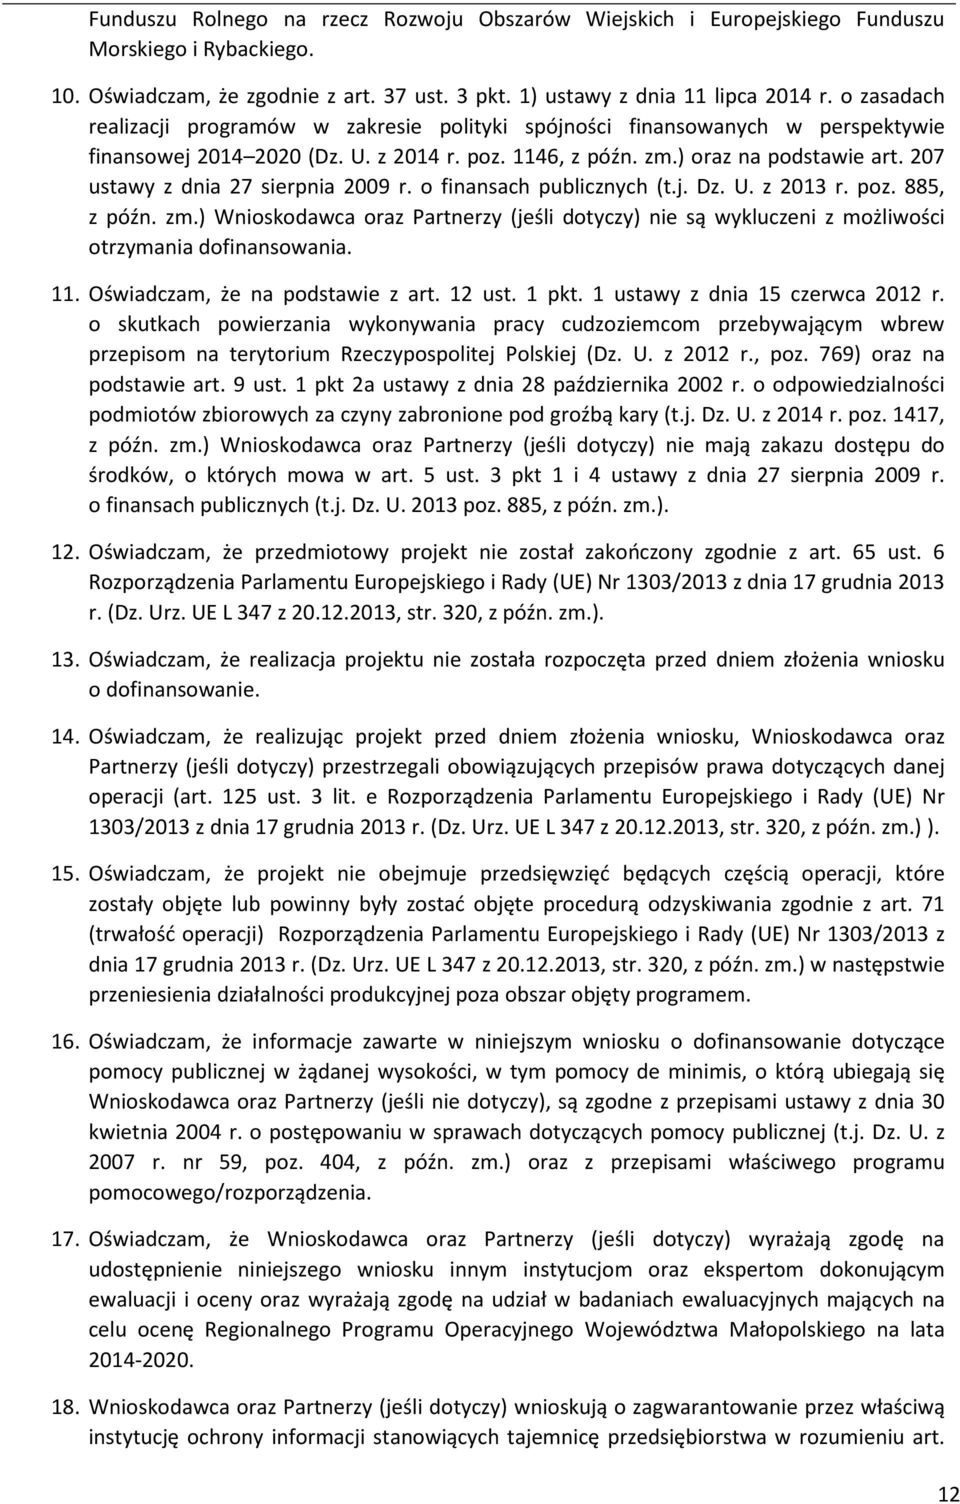 207 ustawy z dnia 27 sierpnia 2009 r. o finansach publicznych (t.j. Dz. U. z 203 r. poz. 885, z późn. zm.